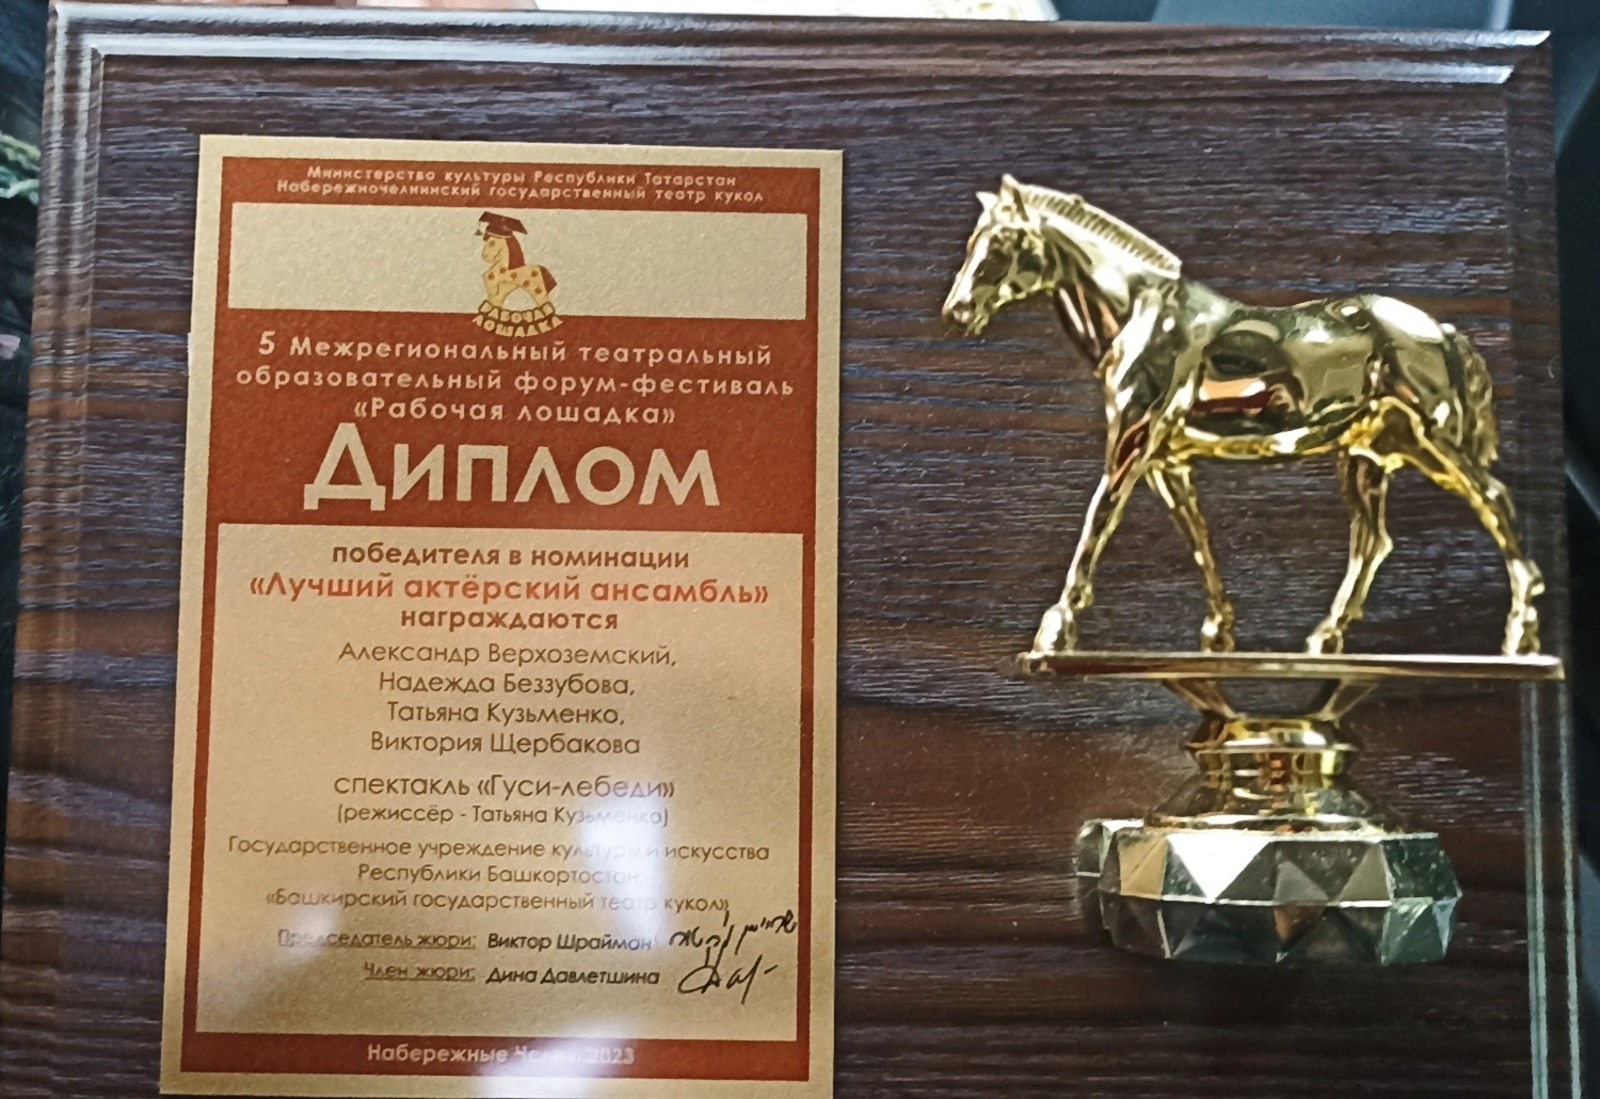 С форума-фестиваля «Рабочая лошадка»  башкирский театр кукол приехал с наградами